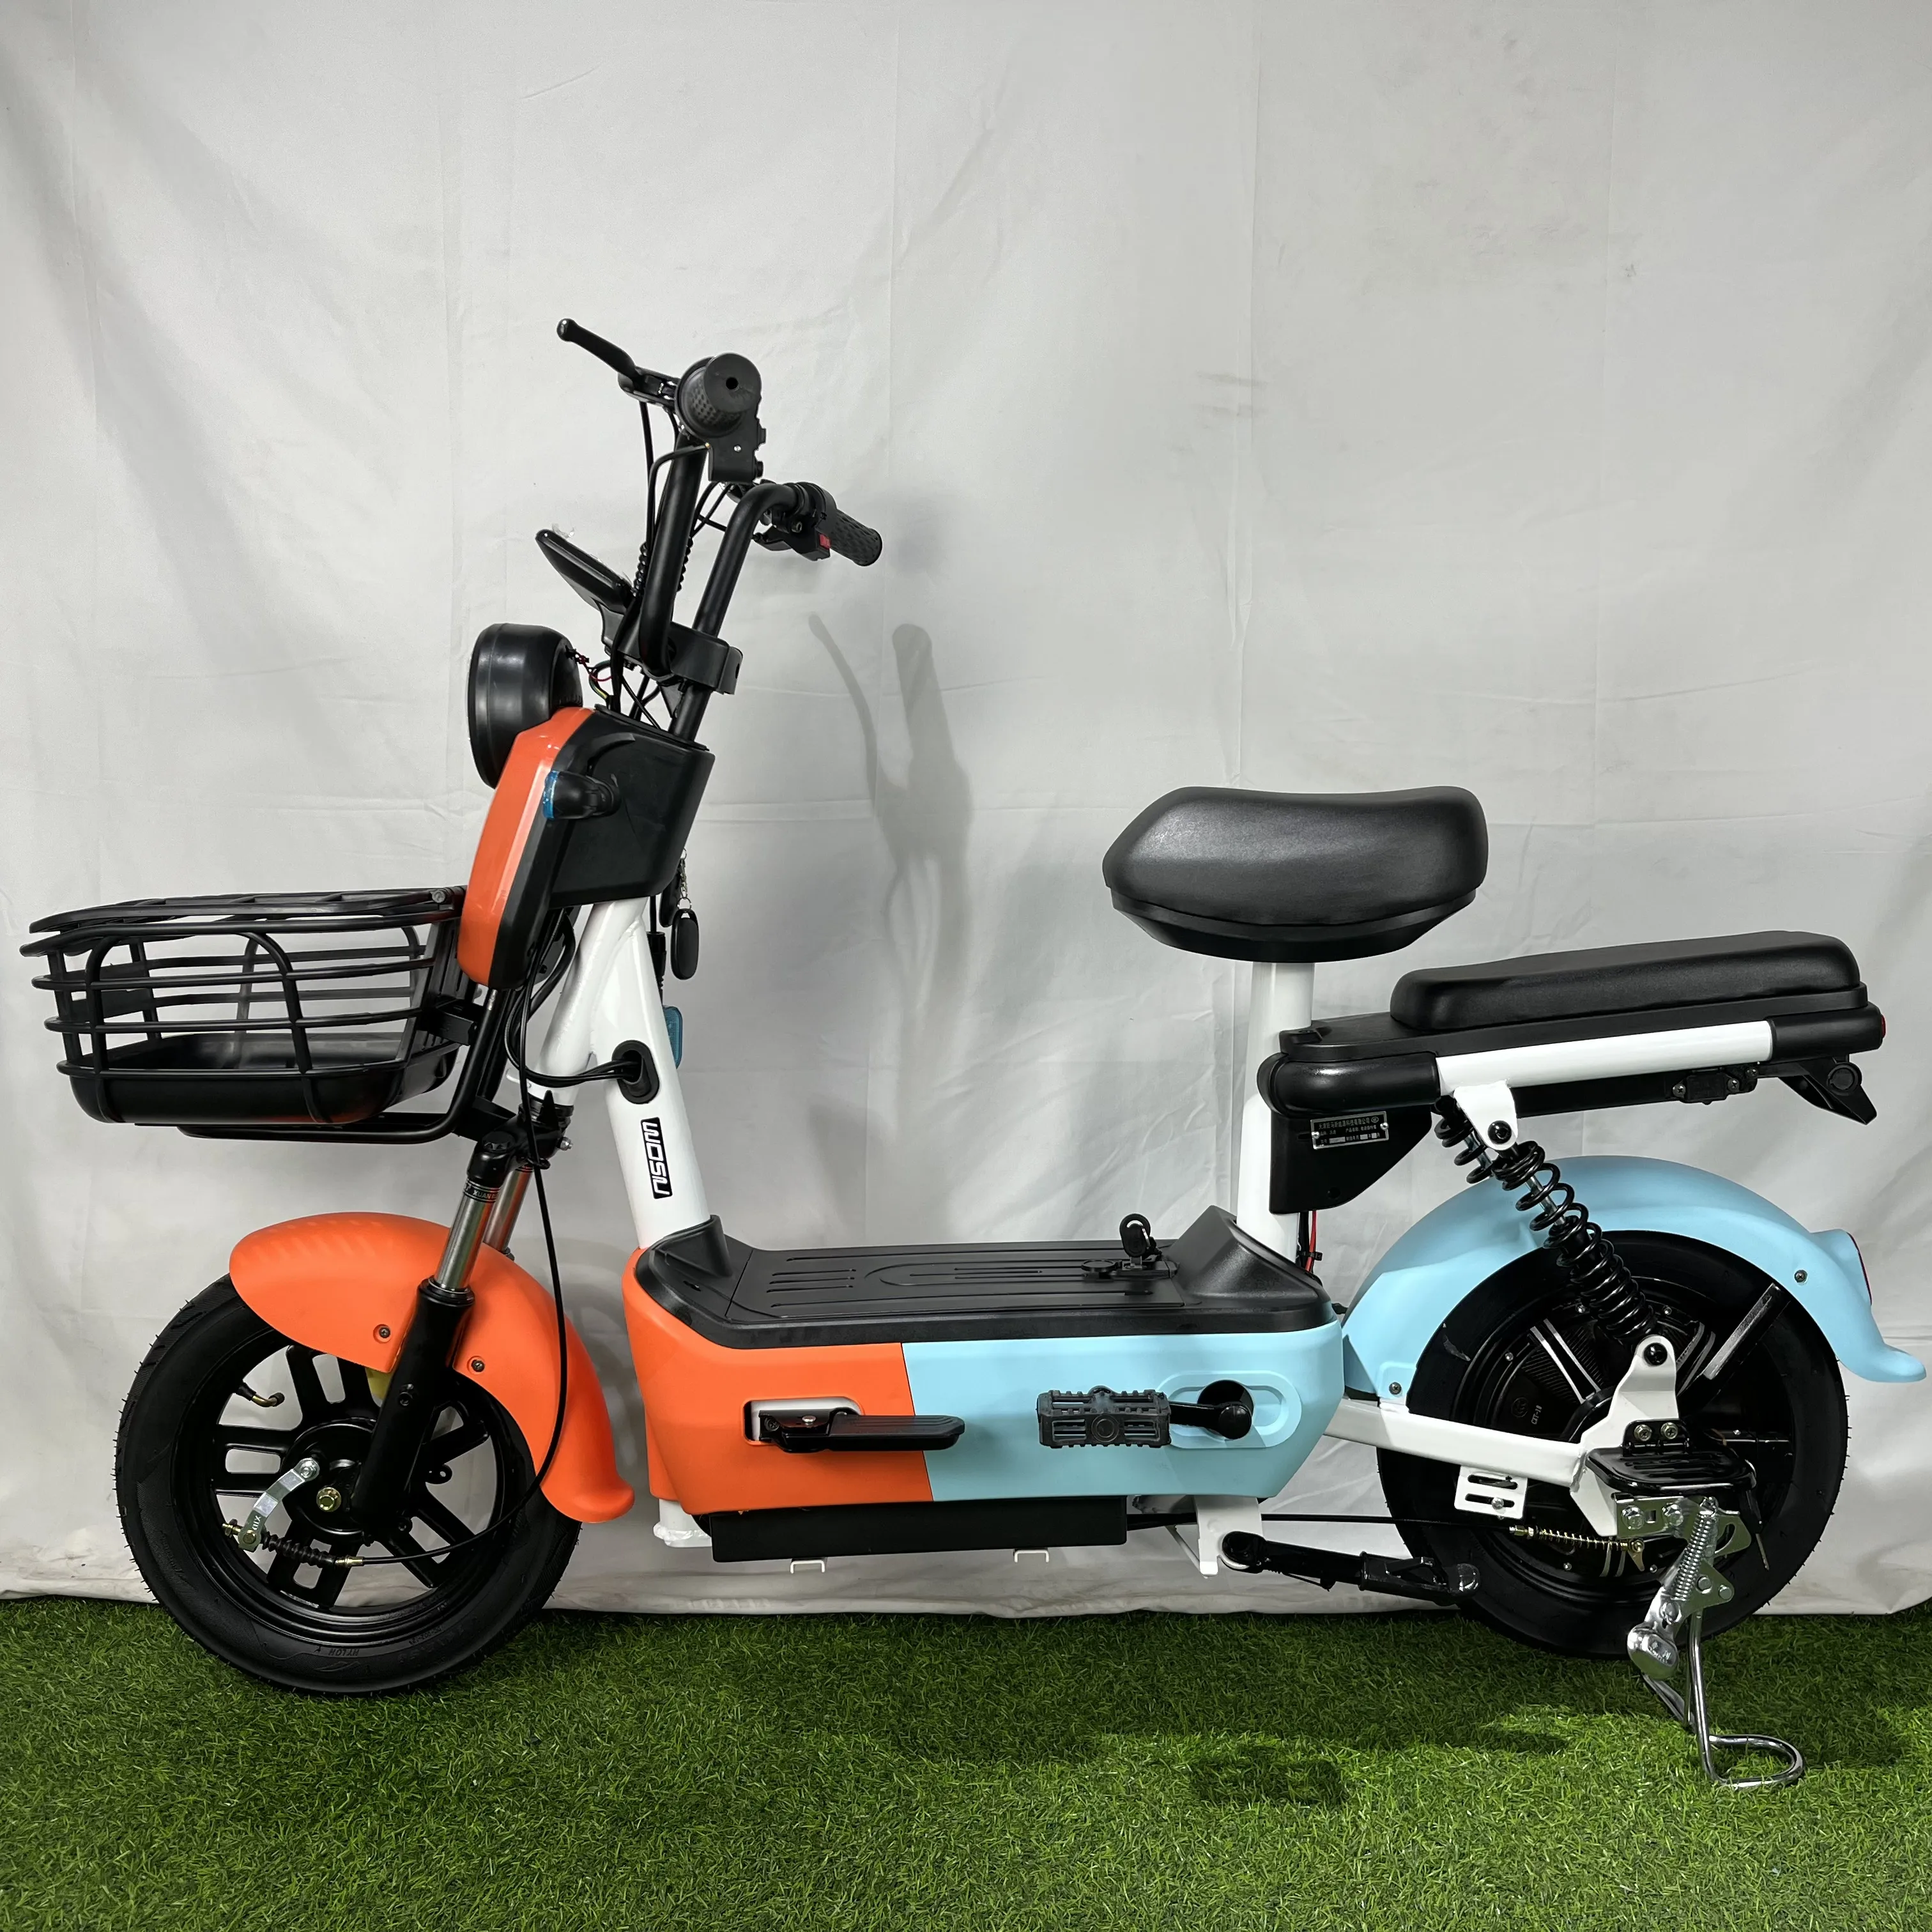 2013 싼 가격 전기 스쿠터 48v 350w 도시 자전거 높은 힘과 장거리 전자 자전거